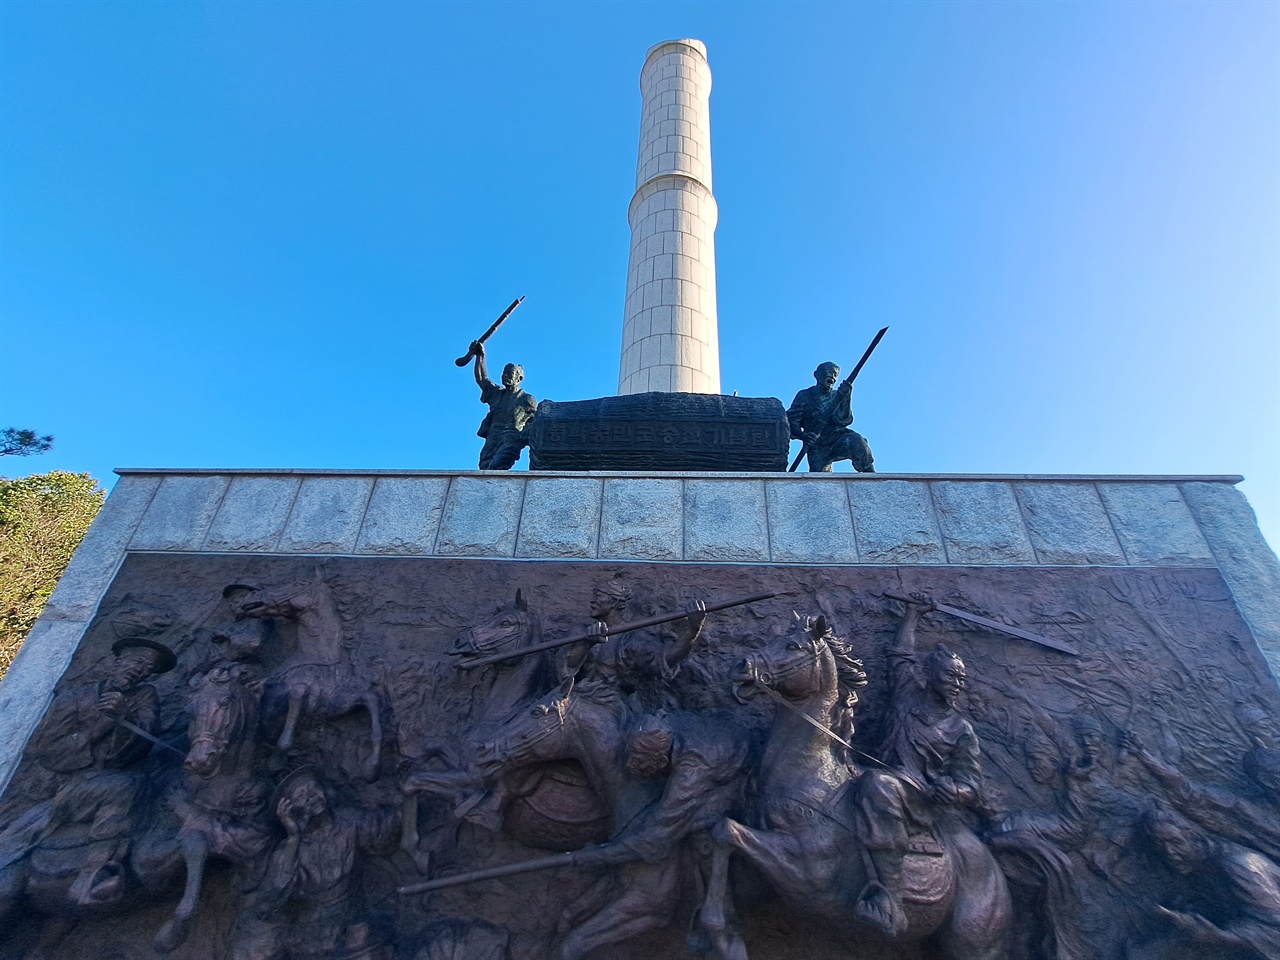 황룡강 전투 기념비 부분으로 장태를 굴리며 싸우는 모습이 나타나 있다.